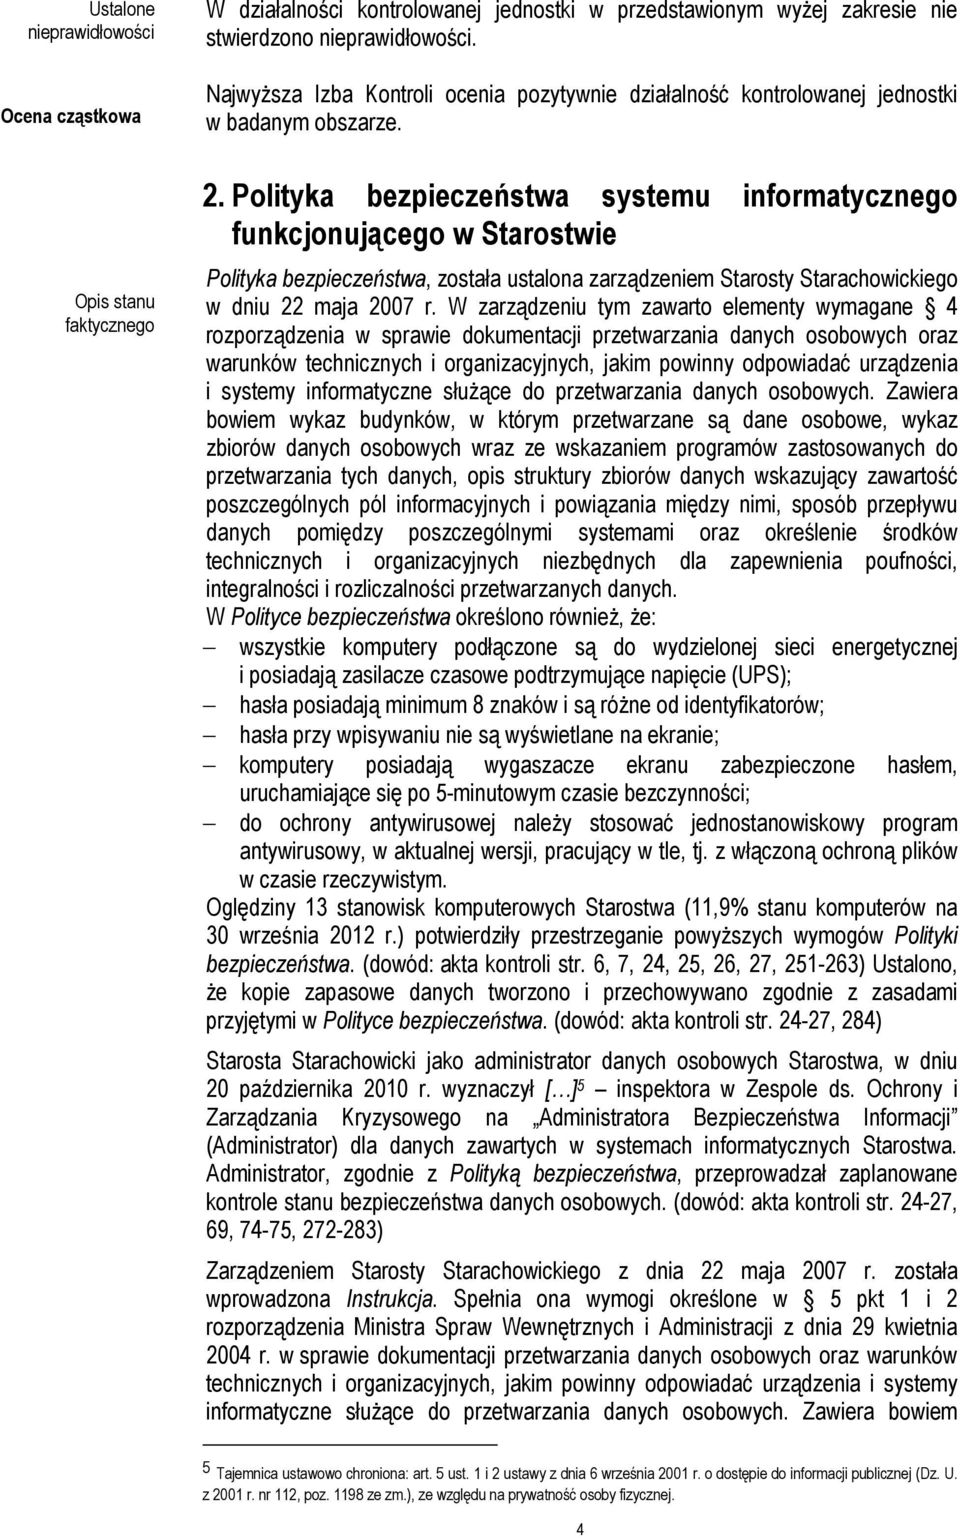 Polityka bezpieczeństwa systemu informatycznego funkcjonującego w Starostwie Polityka bezpieczeństwa, została ustalona zarządzeniem Starosty Starachowickiego w dniu 22 maja 2007 r.